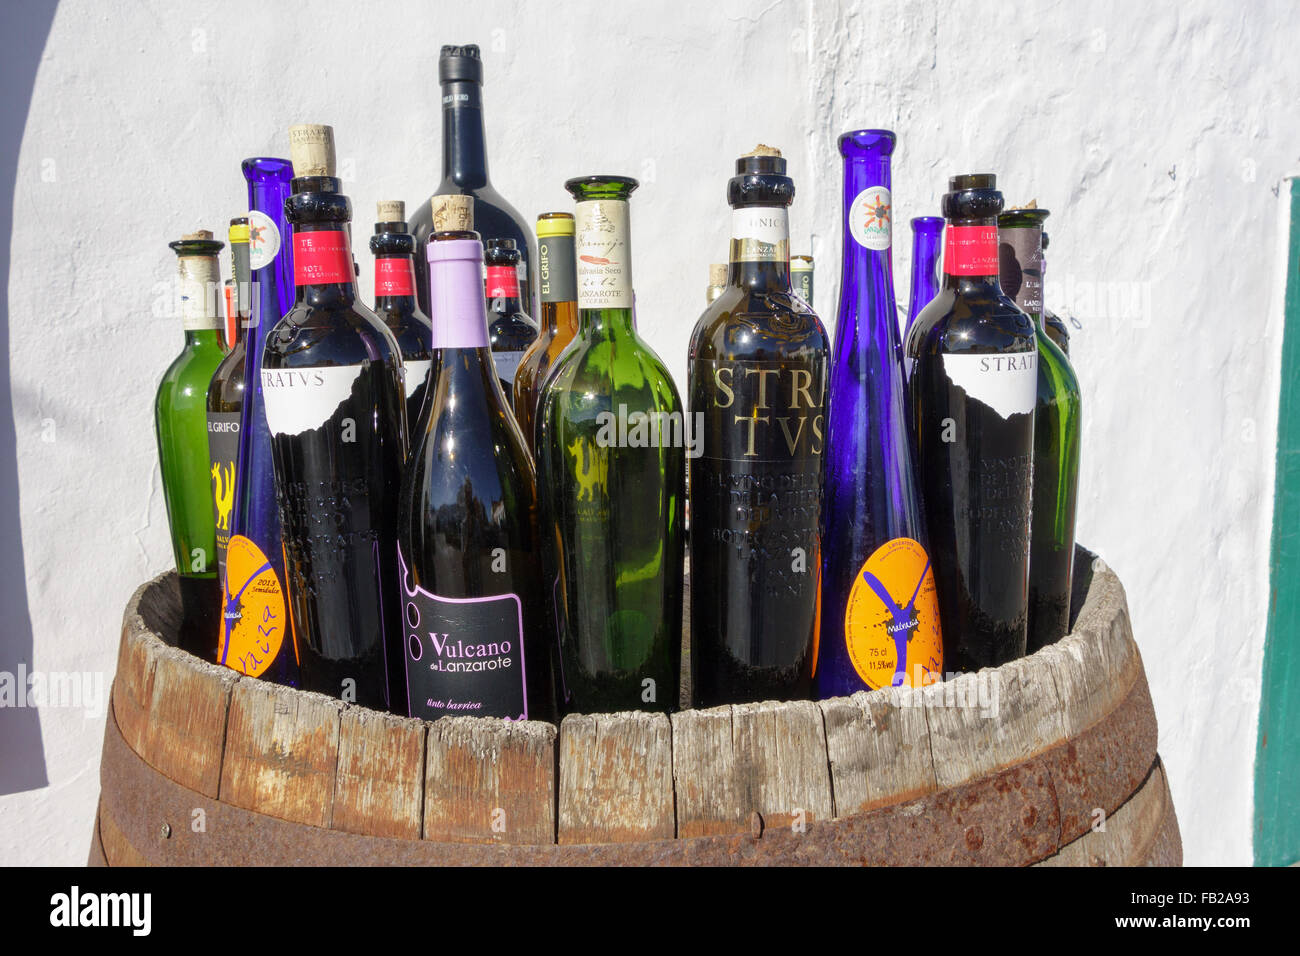 Spanien, Lanzarote, Teguise. Externe Anzeige von lokal produzierten Flaschen Wein zu verkaufen. Stockfoto